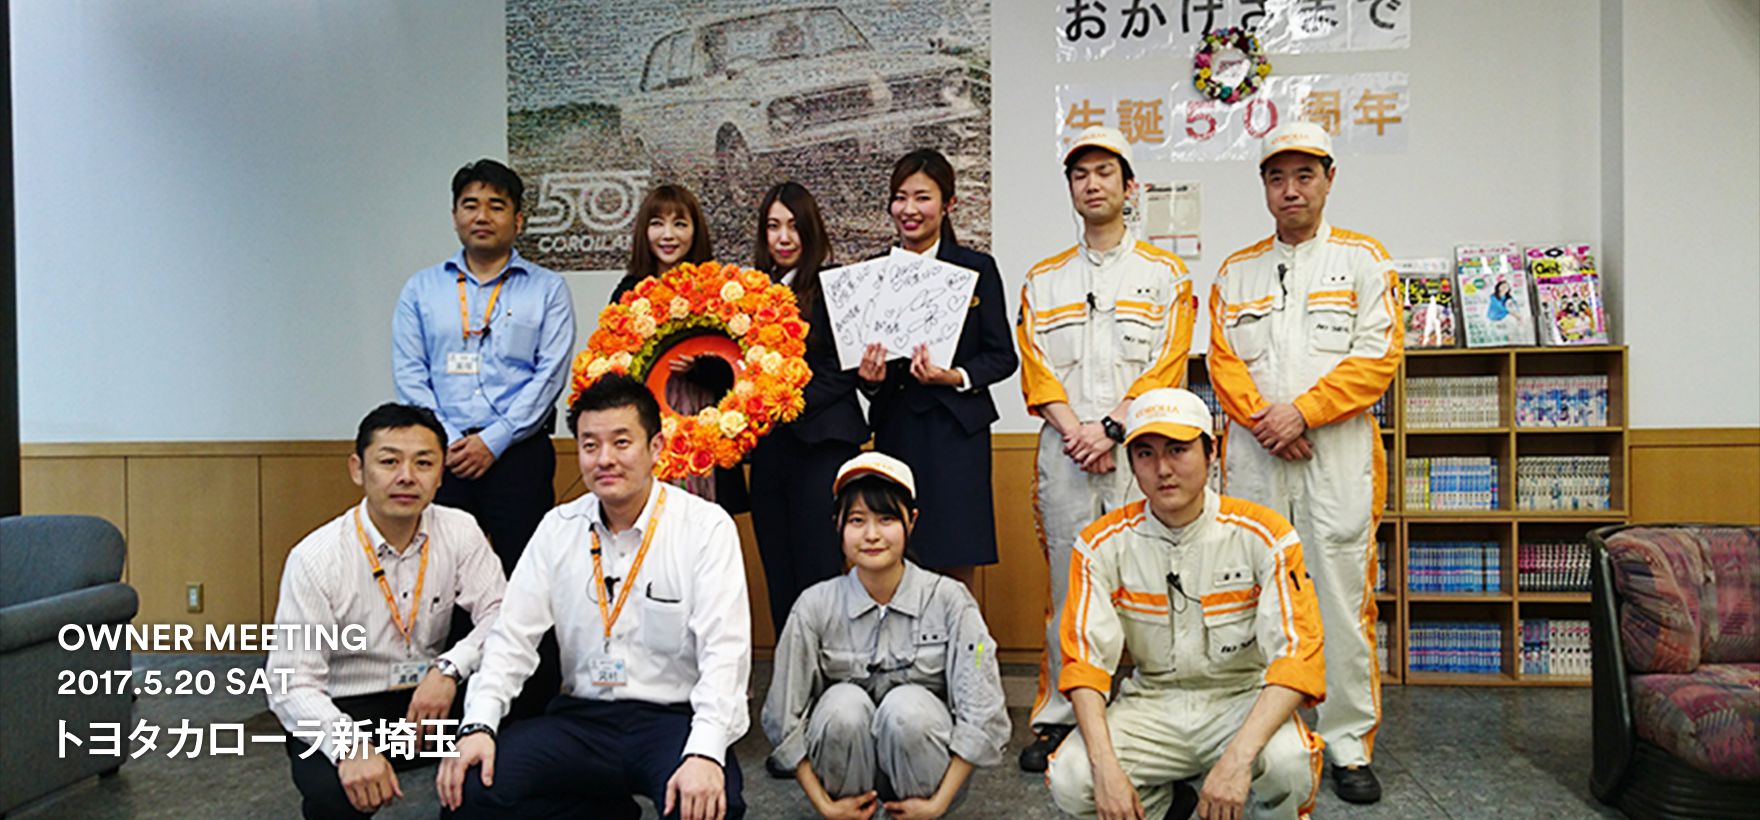 トヨタ インフォメーション キャンペーン カローラ 笑顔の花冠プロジェクト トヨタカローラ新埼玉 トヨタ自動車webサイト